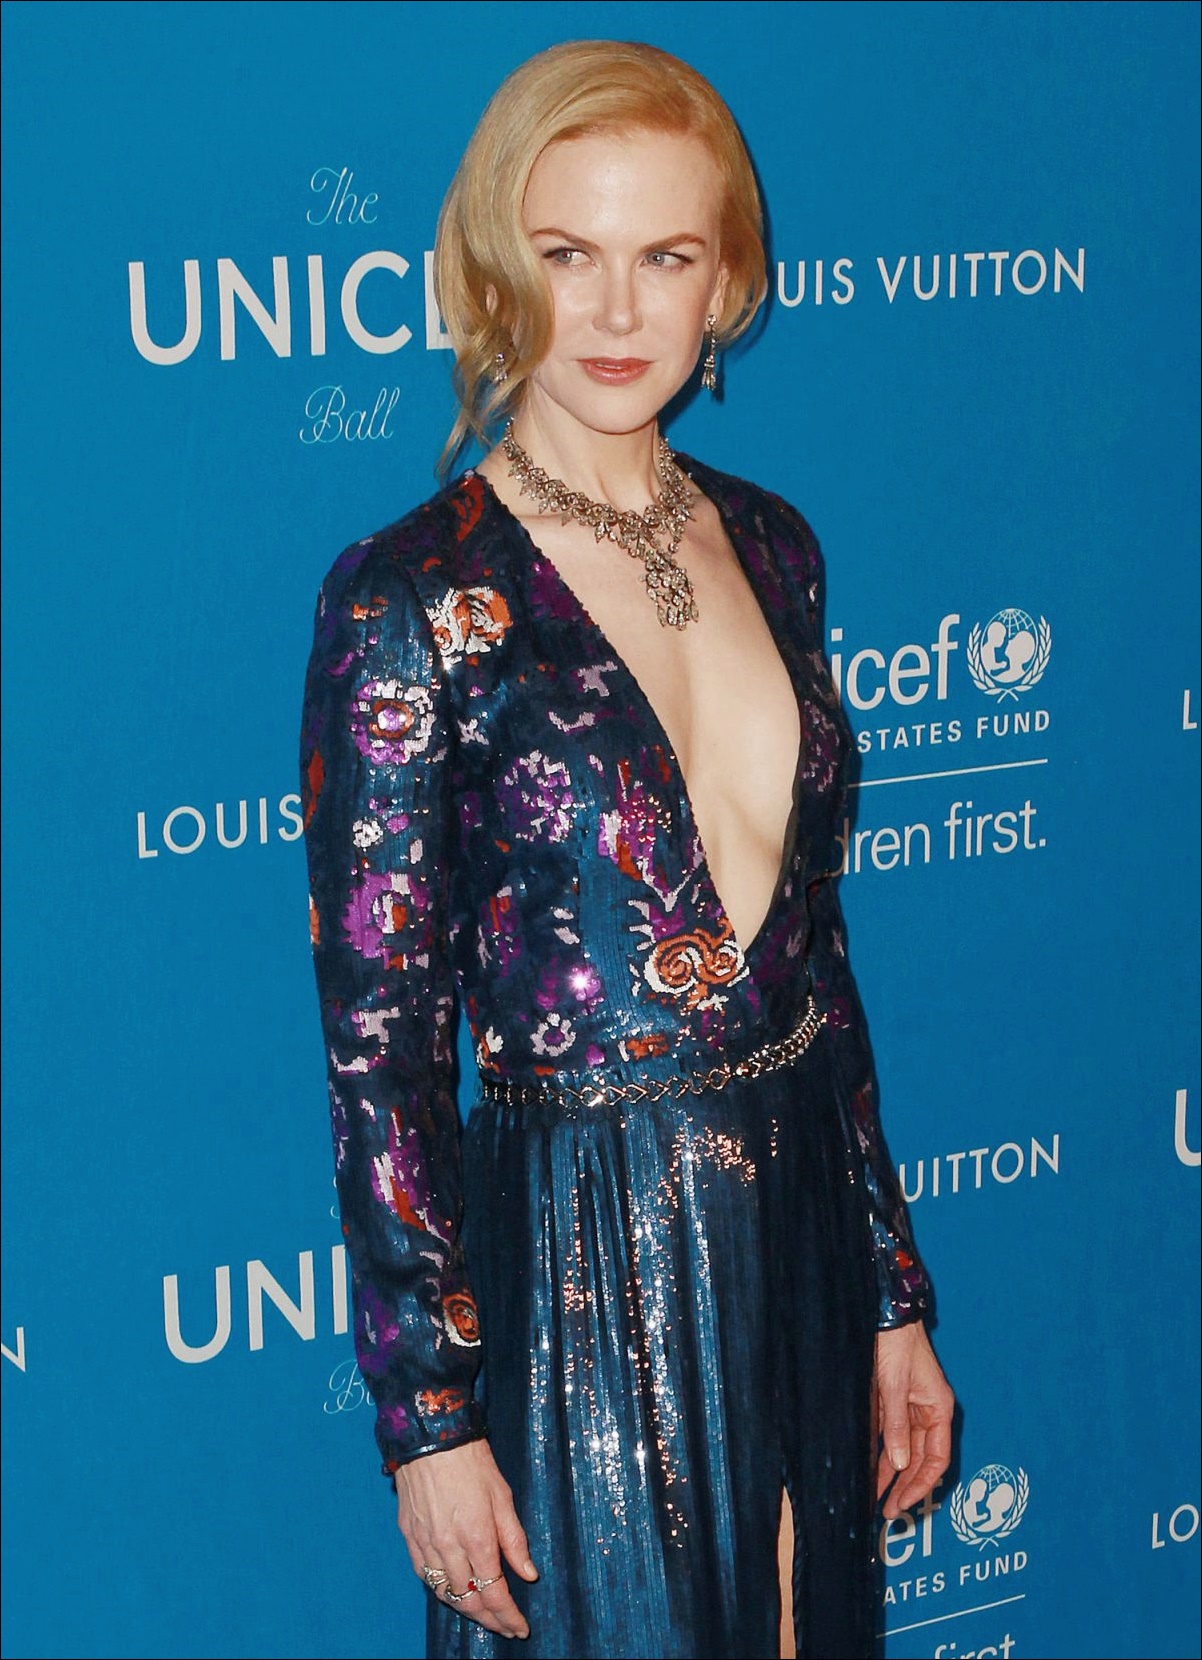 Nicole Kidman vor und nach der plastischen Chirurgie Bilder  